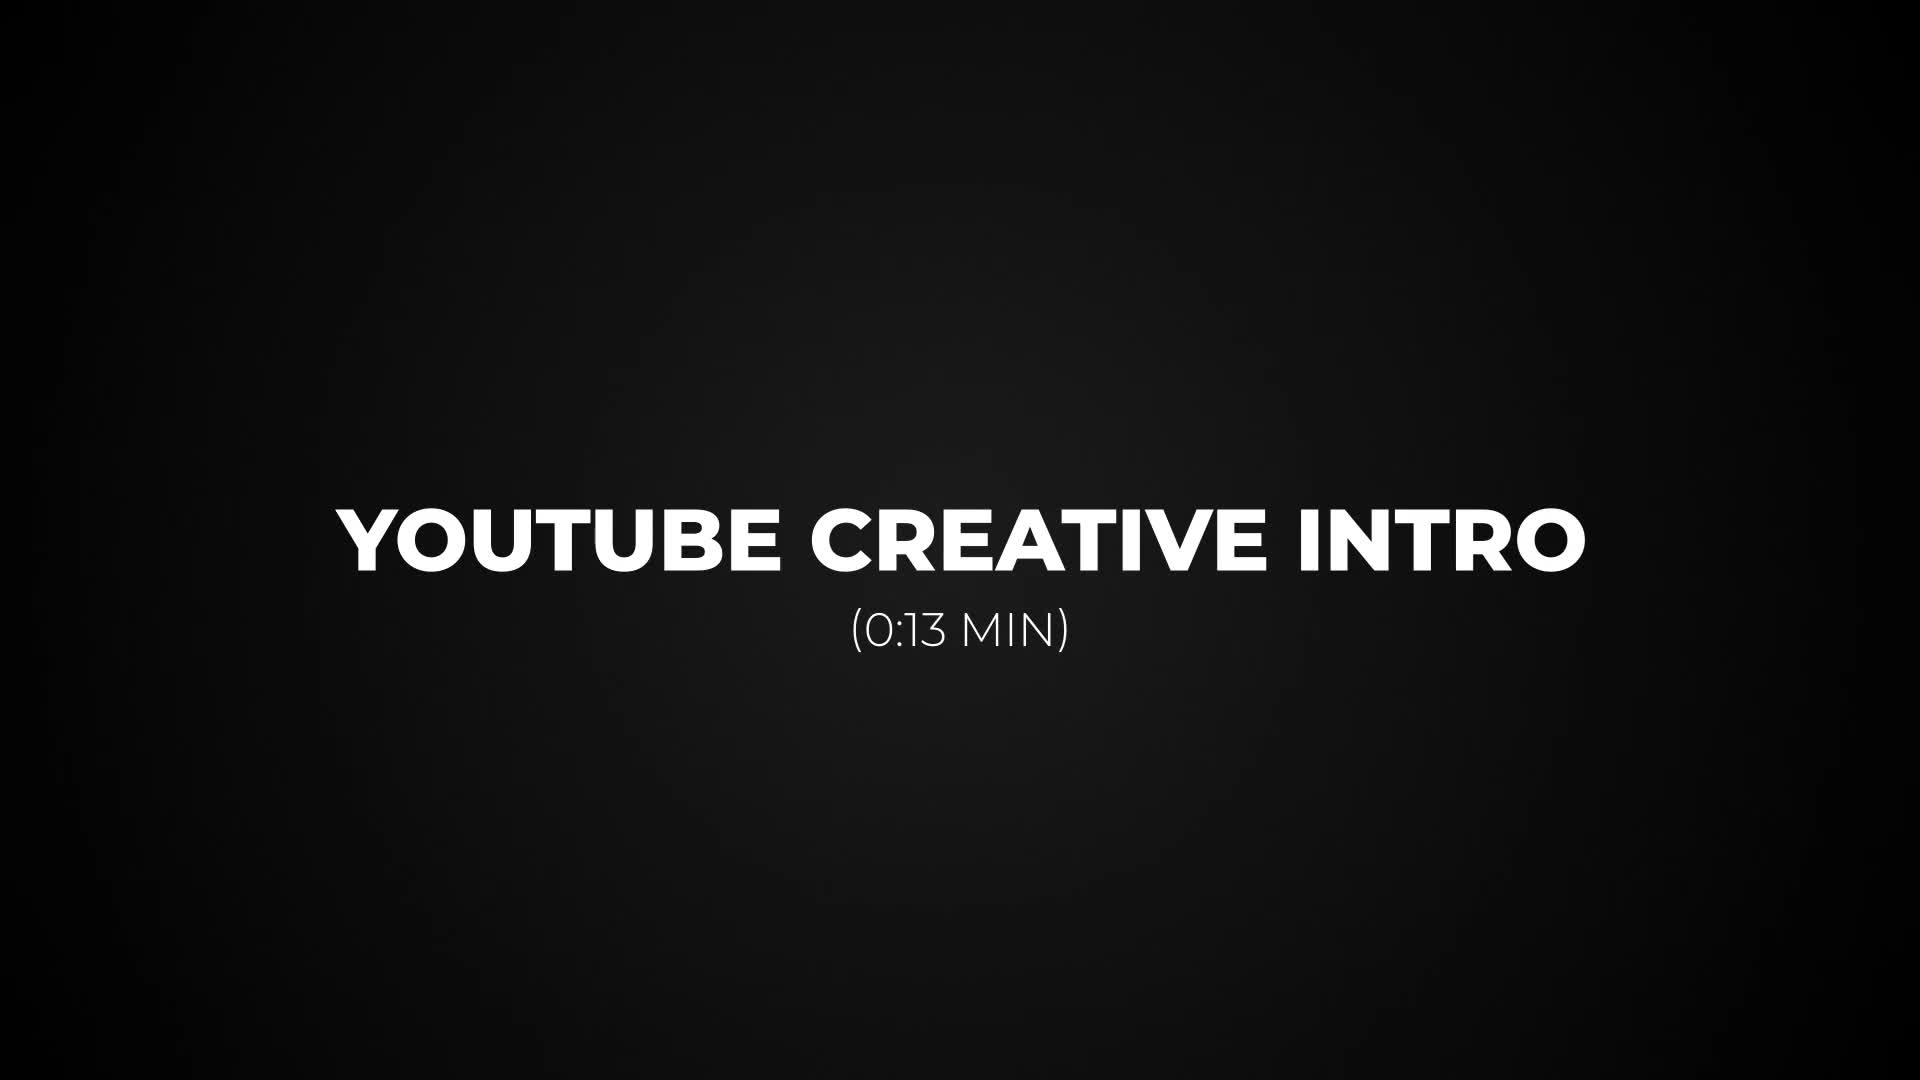 Youtube Intro for Premiere Pro Videohive 35853426 Premiere Pro Image 1